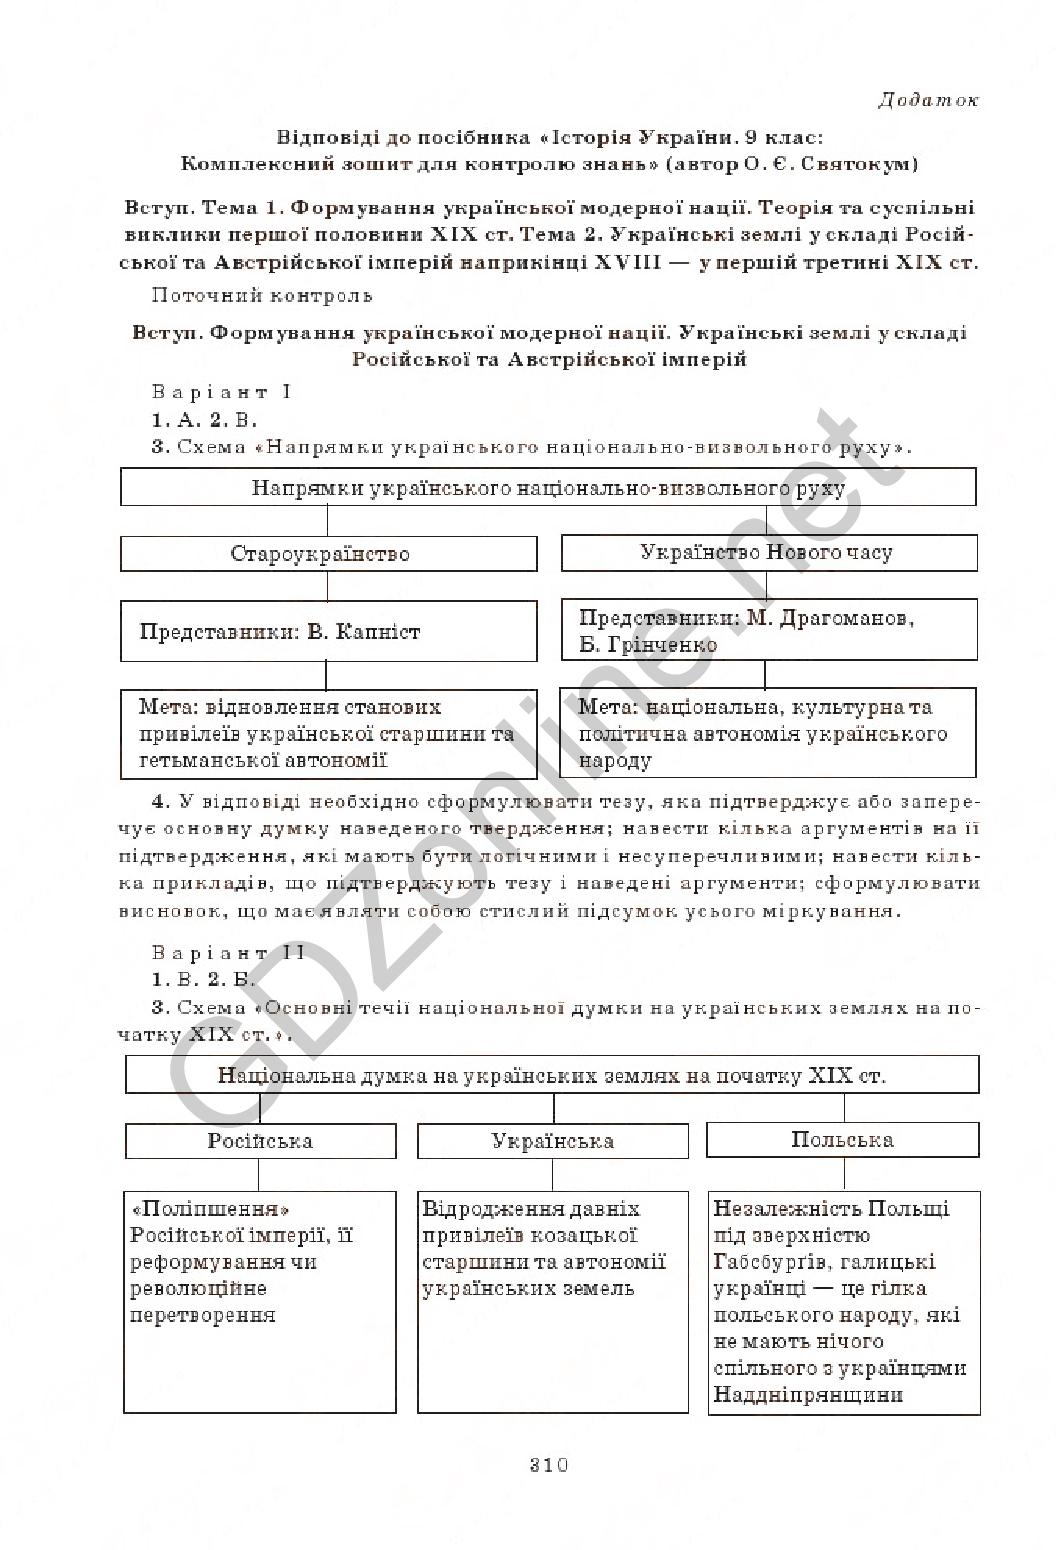 Ответы по истории украины 9 класс мартынюк гисем тестовый контроль